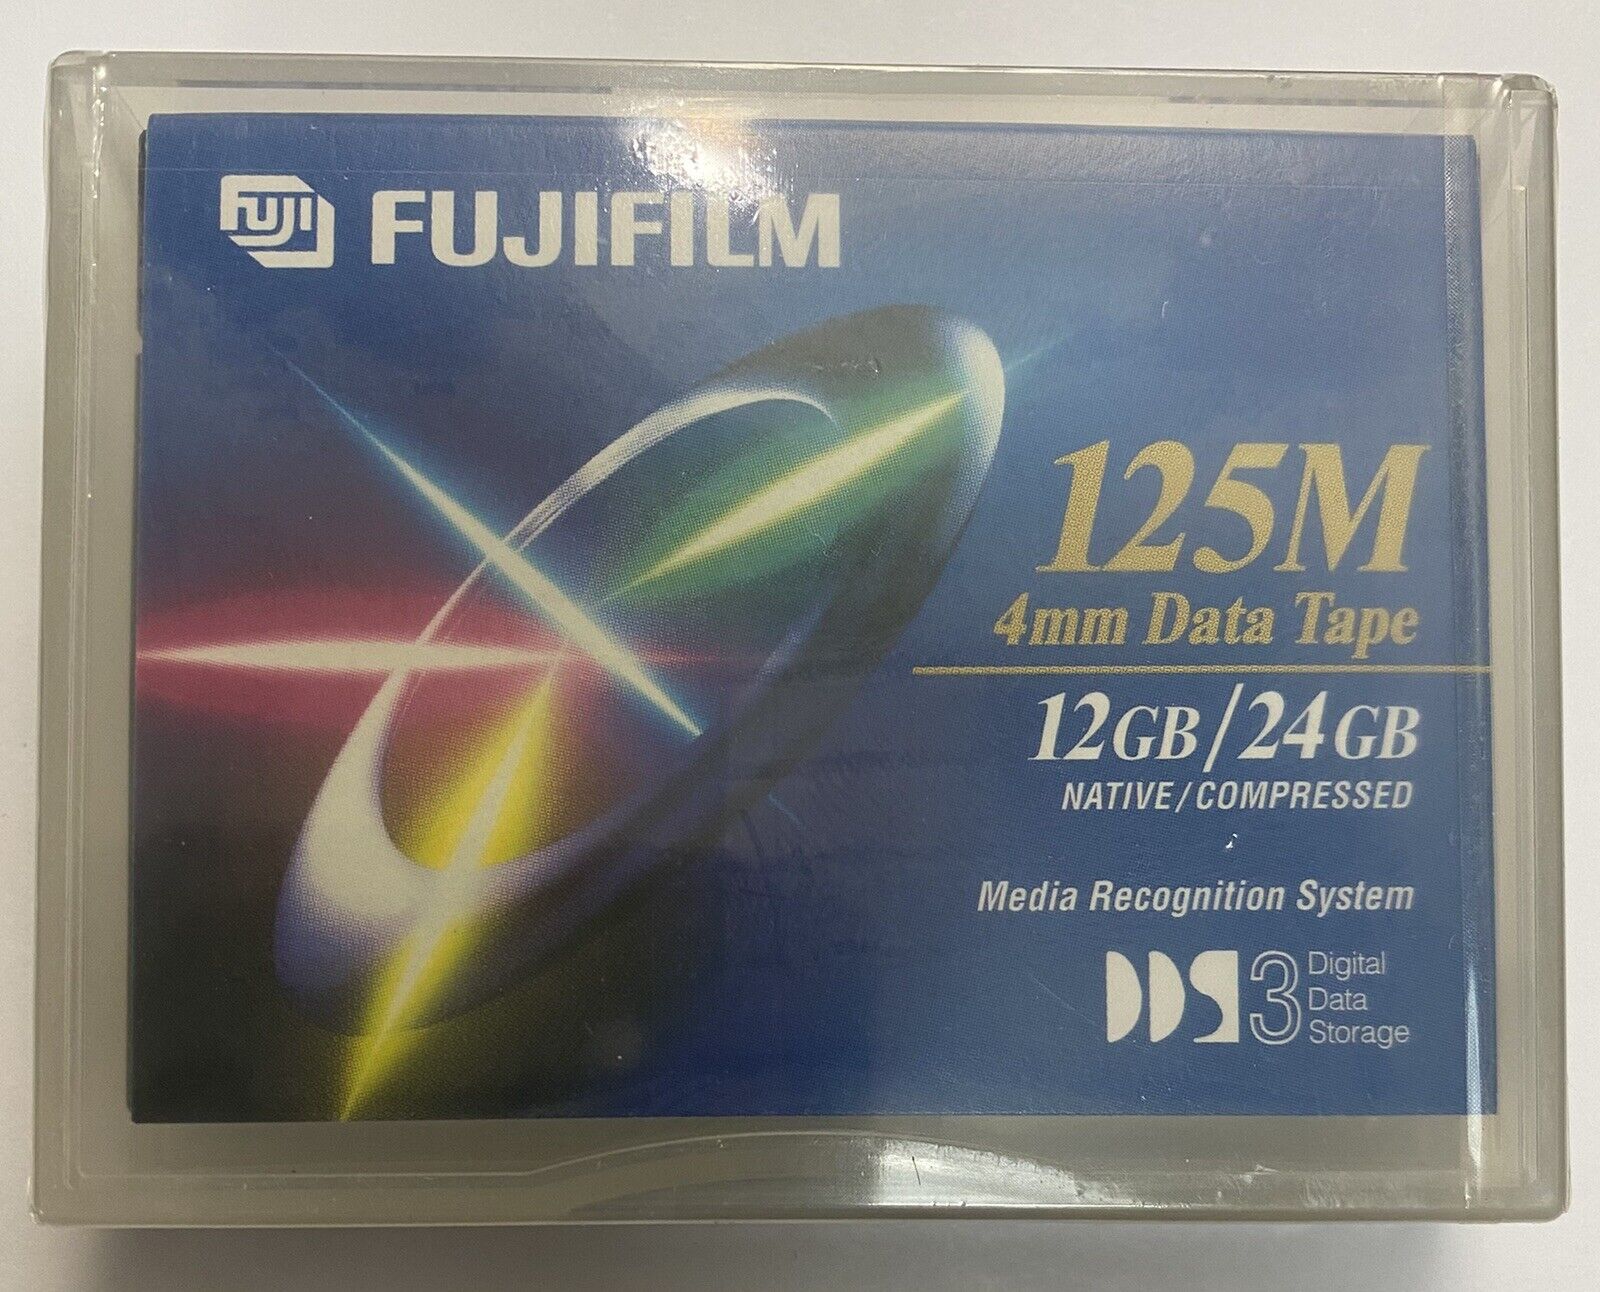 New & Sealed - FujiFilm 125M 12 GB / 24 GB 4mm Data Tape Cartridge